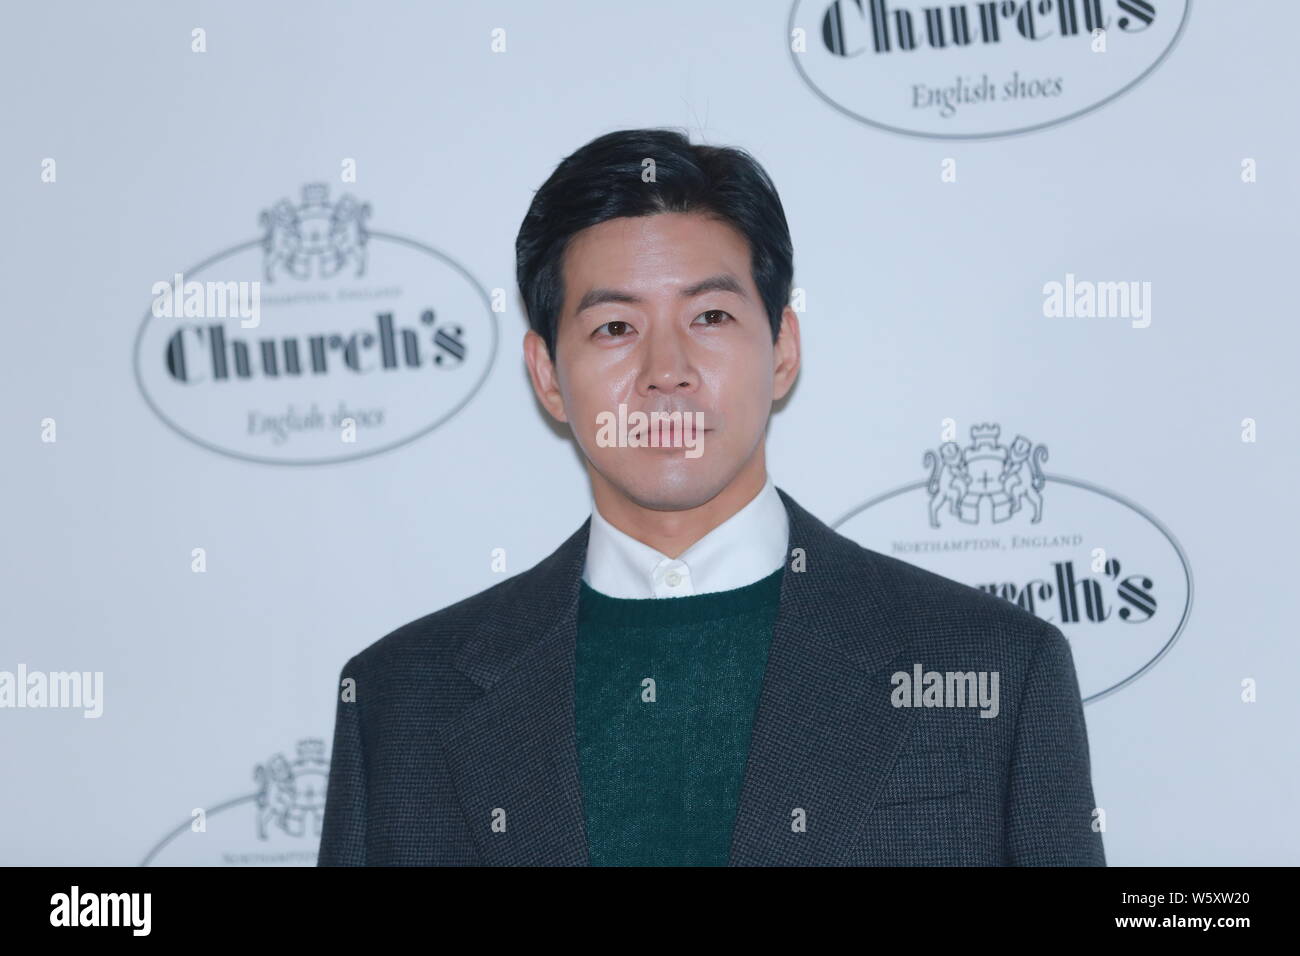 L'acteur sud-coréen Lee Sang-yoon assiste à un événement promotionnel pour l'Église à Séoul, Corée du Sud, le 14 novembre 2018. Banque D'Images